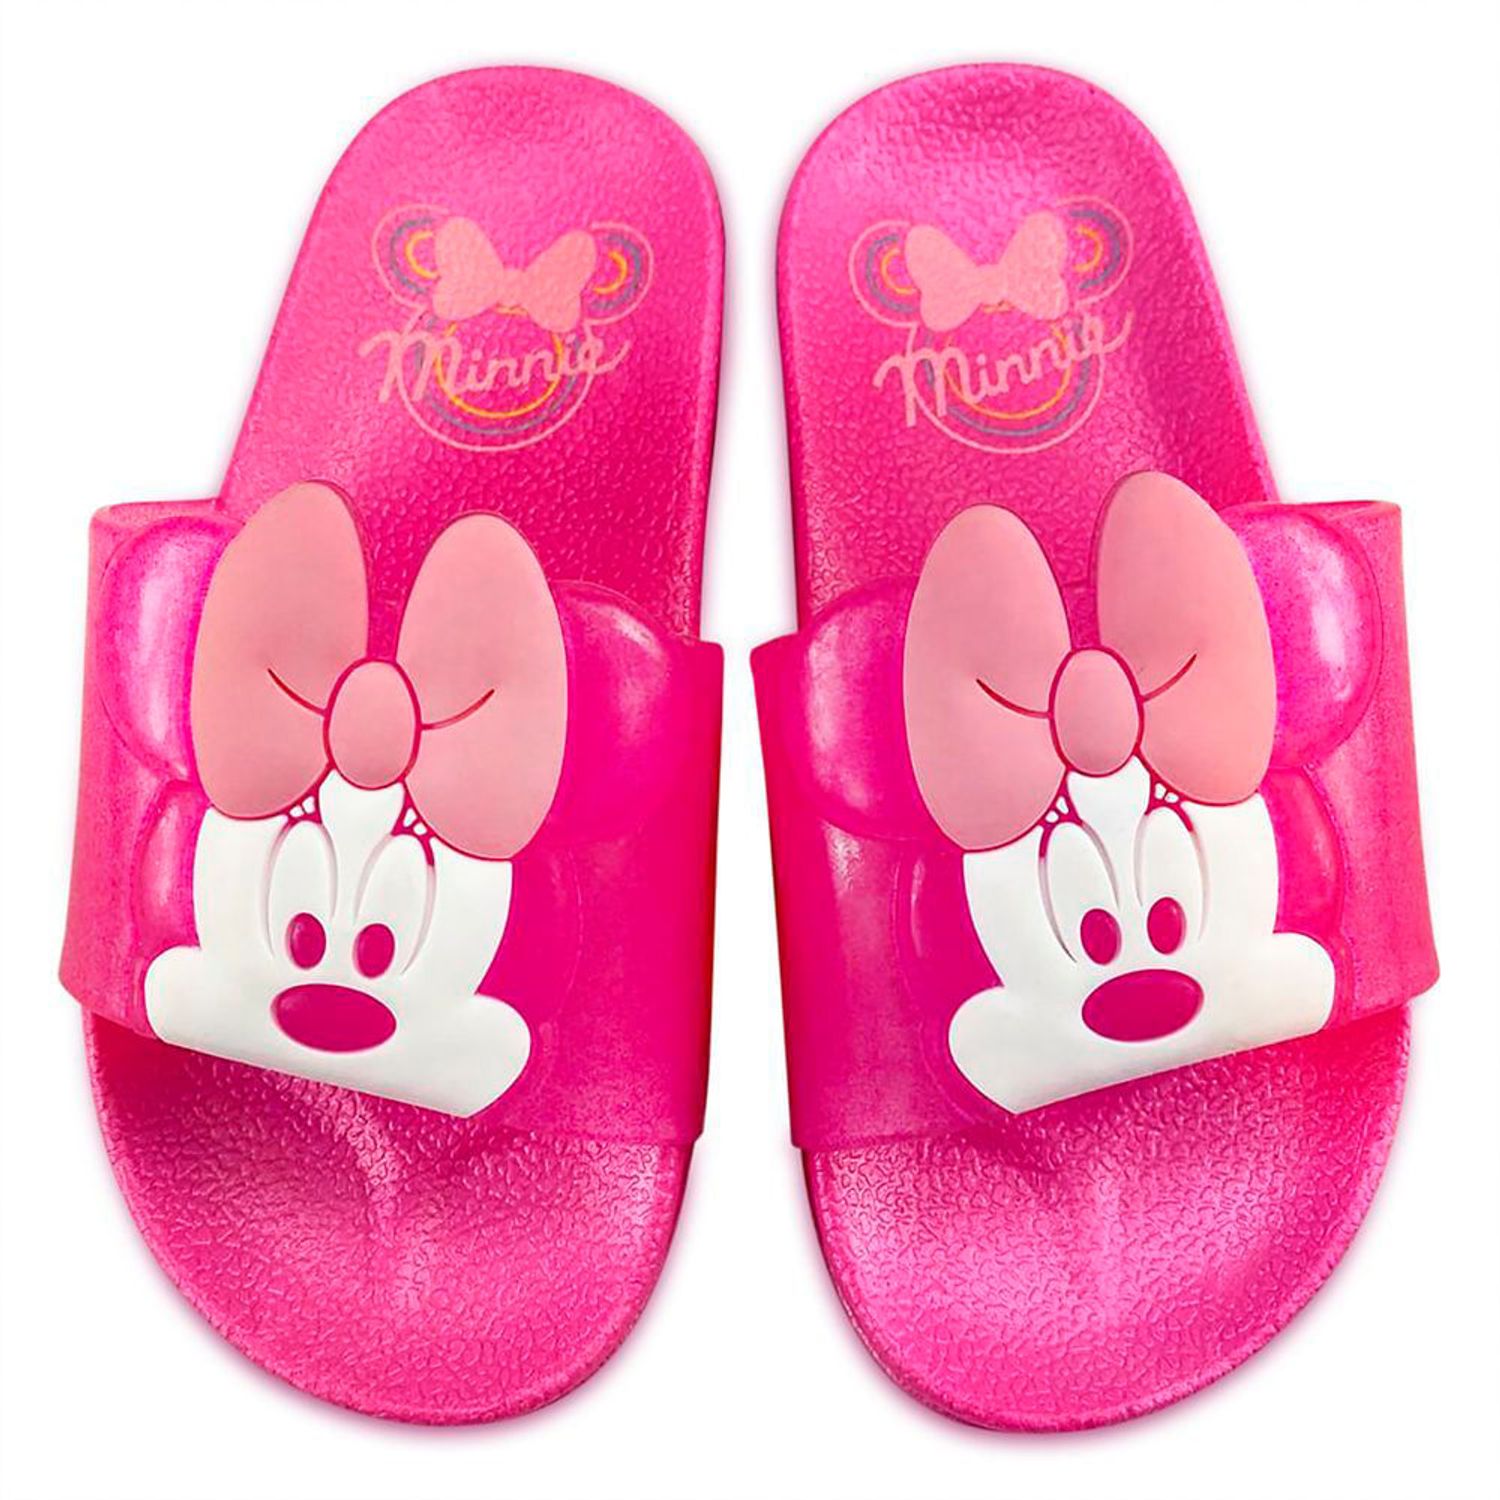 Detalles en Relieve Rosa Chanclas Niña Minnie Mouse Disney Tamaños del 24 al 31 